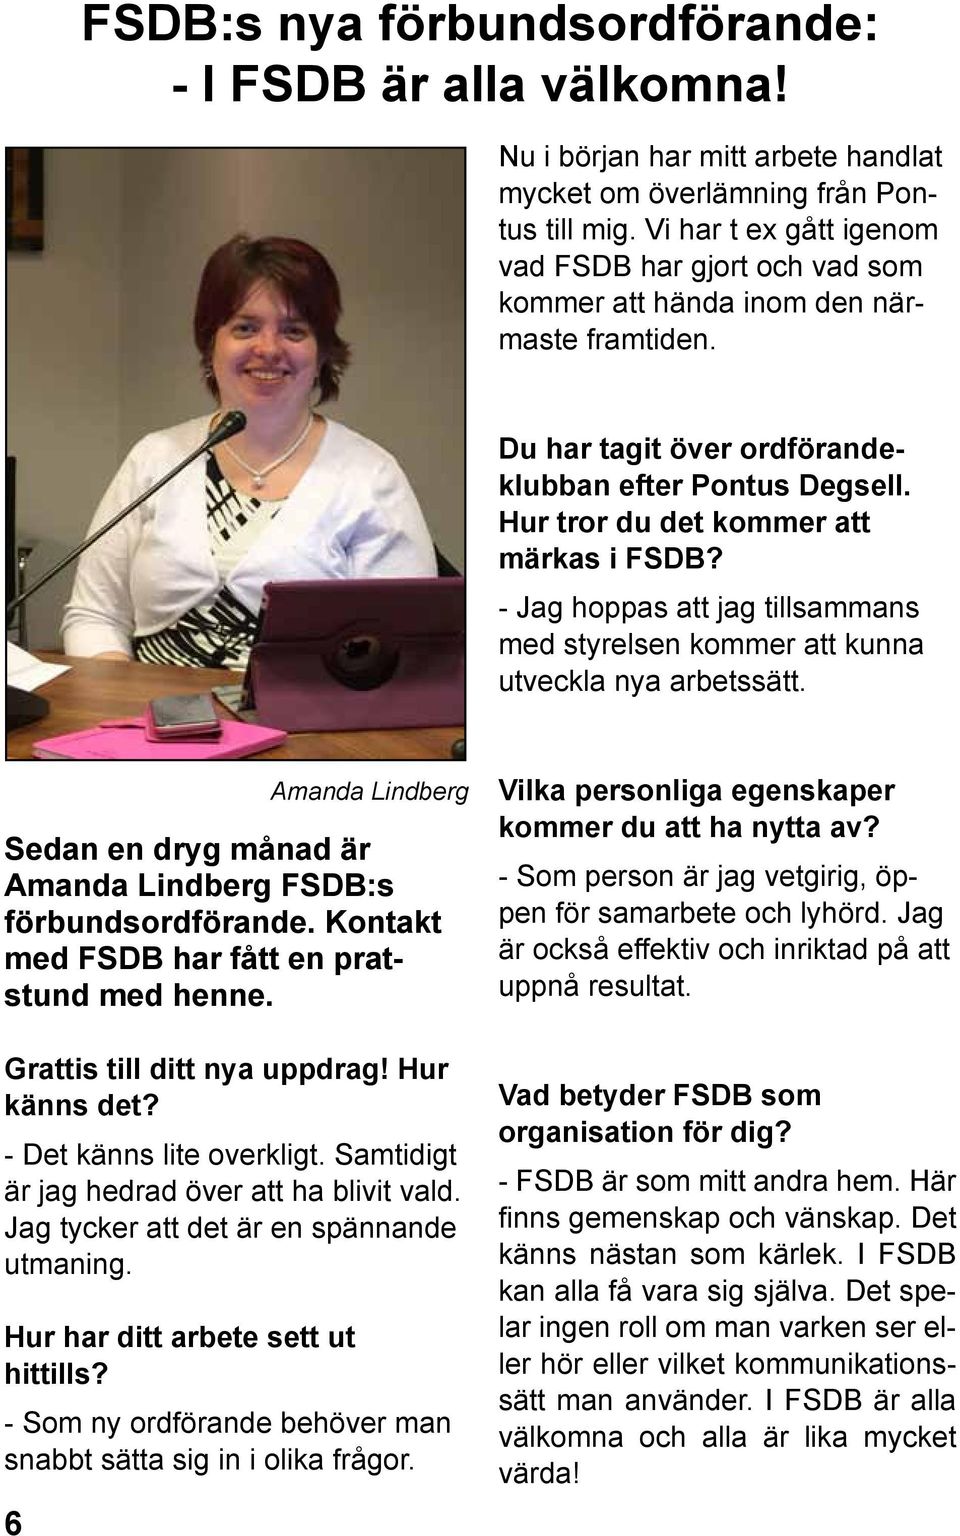 - Jag hoppas att jag tillsammans med styrelsen kommer att kunna utveckla nya arbetssätt. Sedan en dryg månad är Amanda Lindberg FSDB:s förbundsordförande.